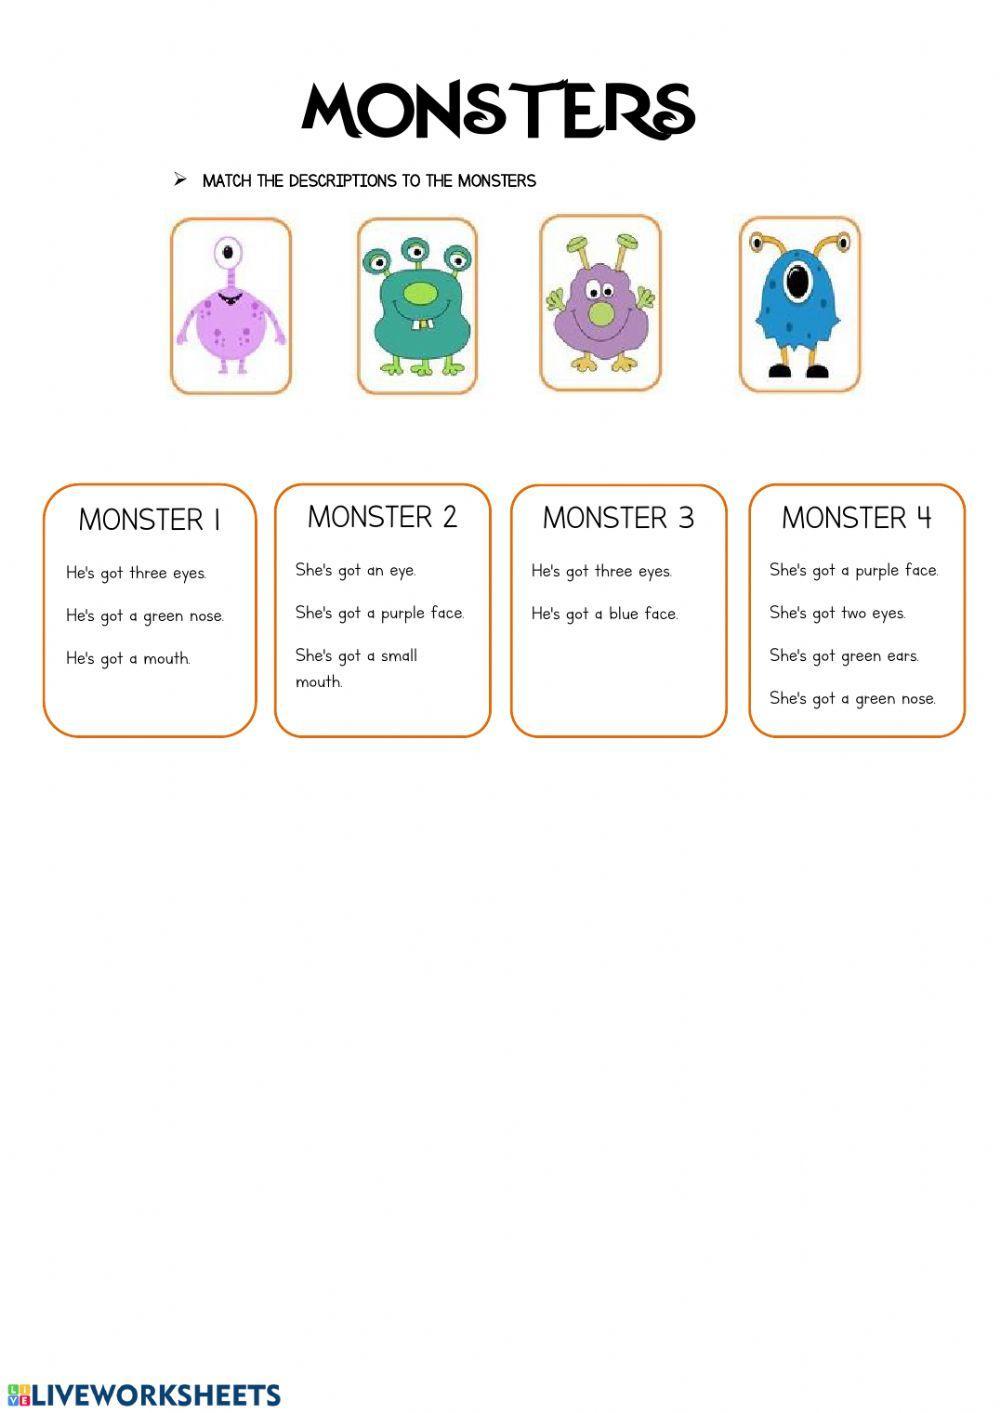 Monsters description